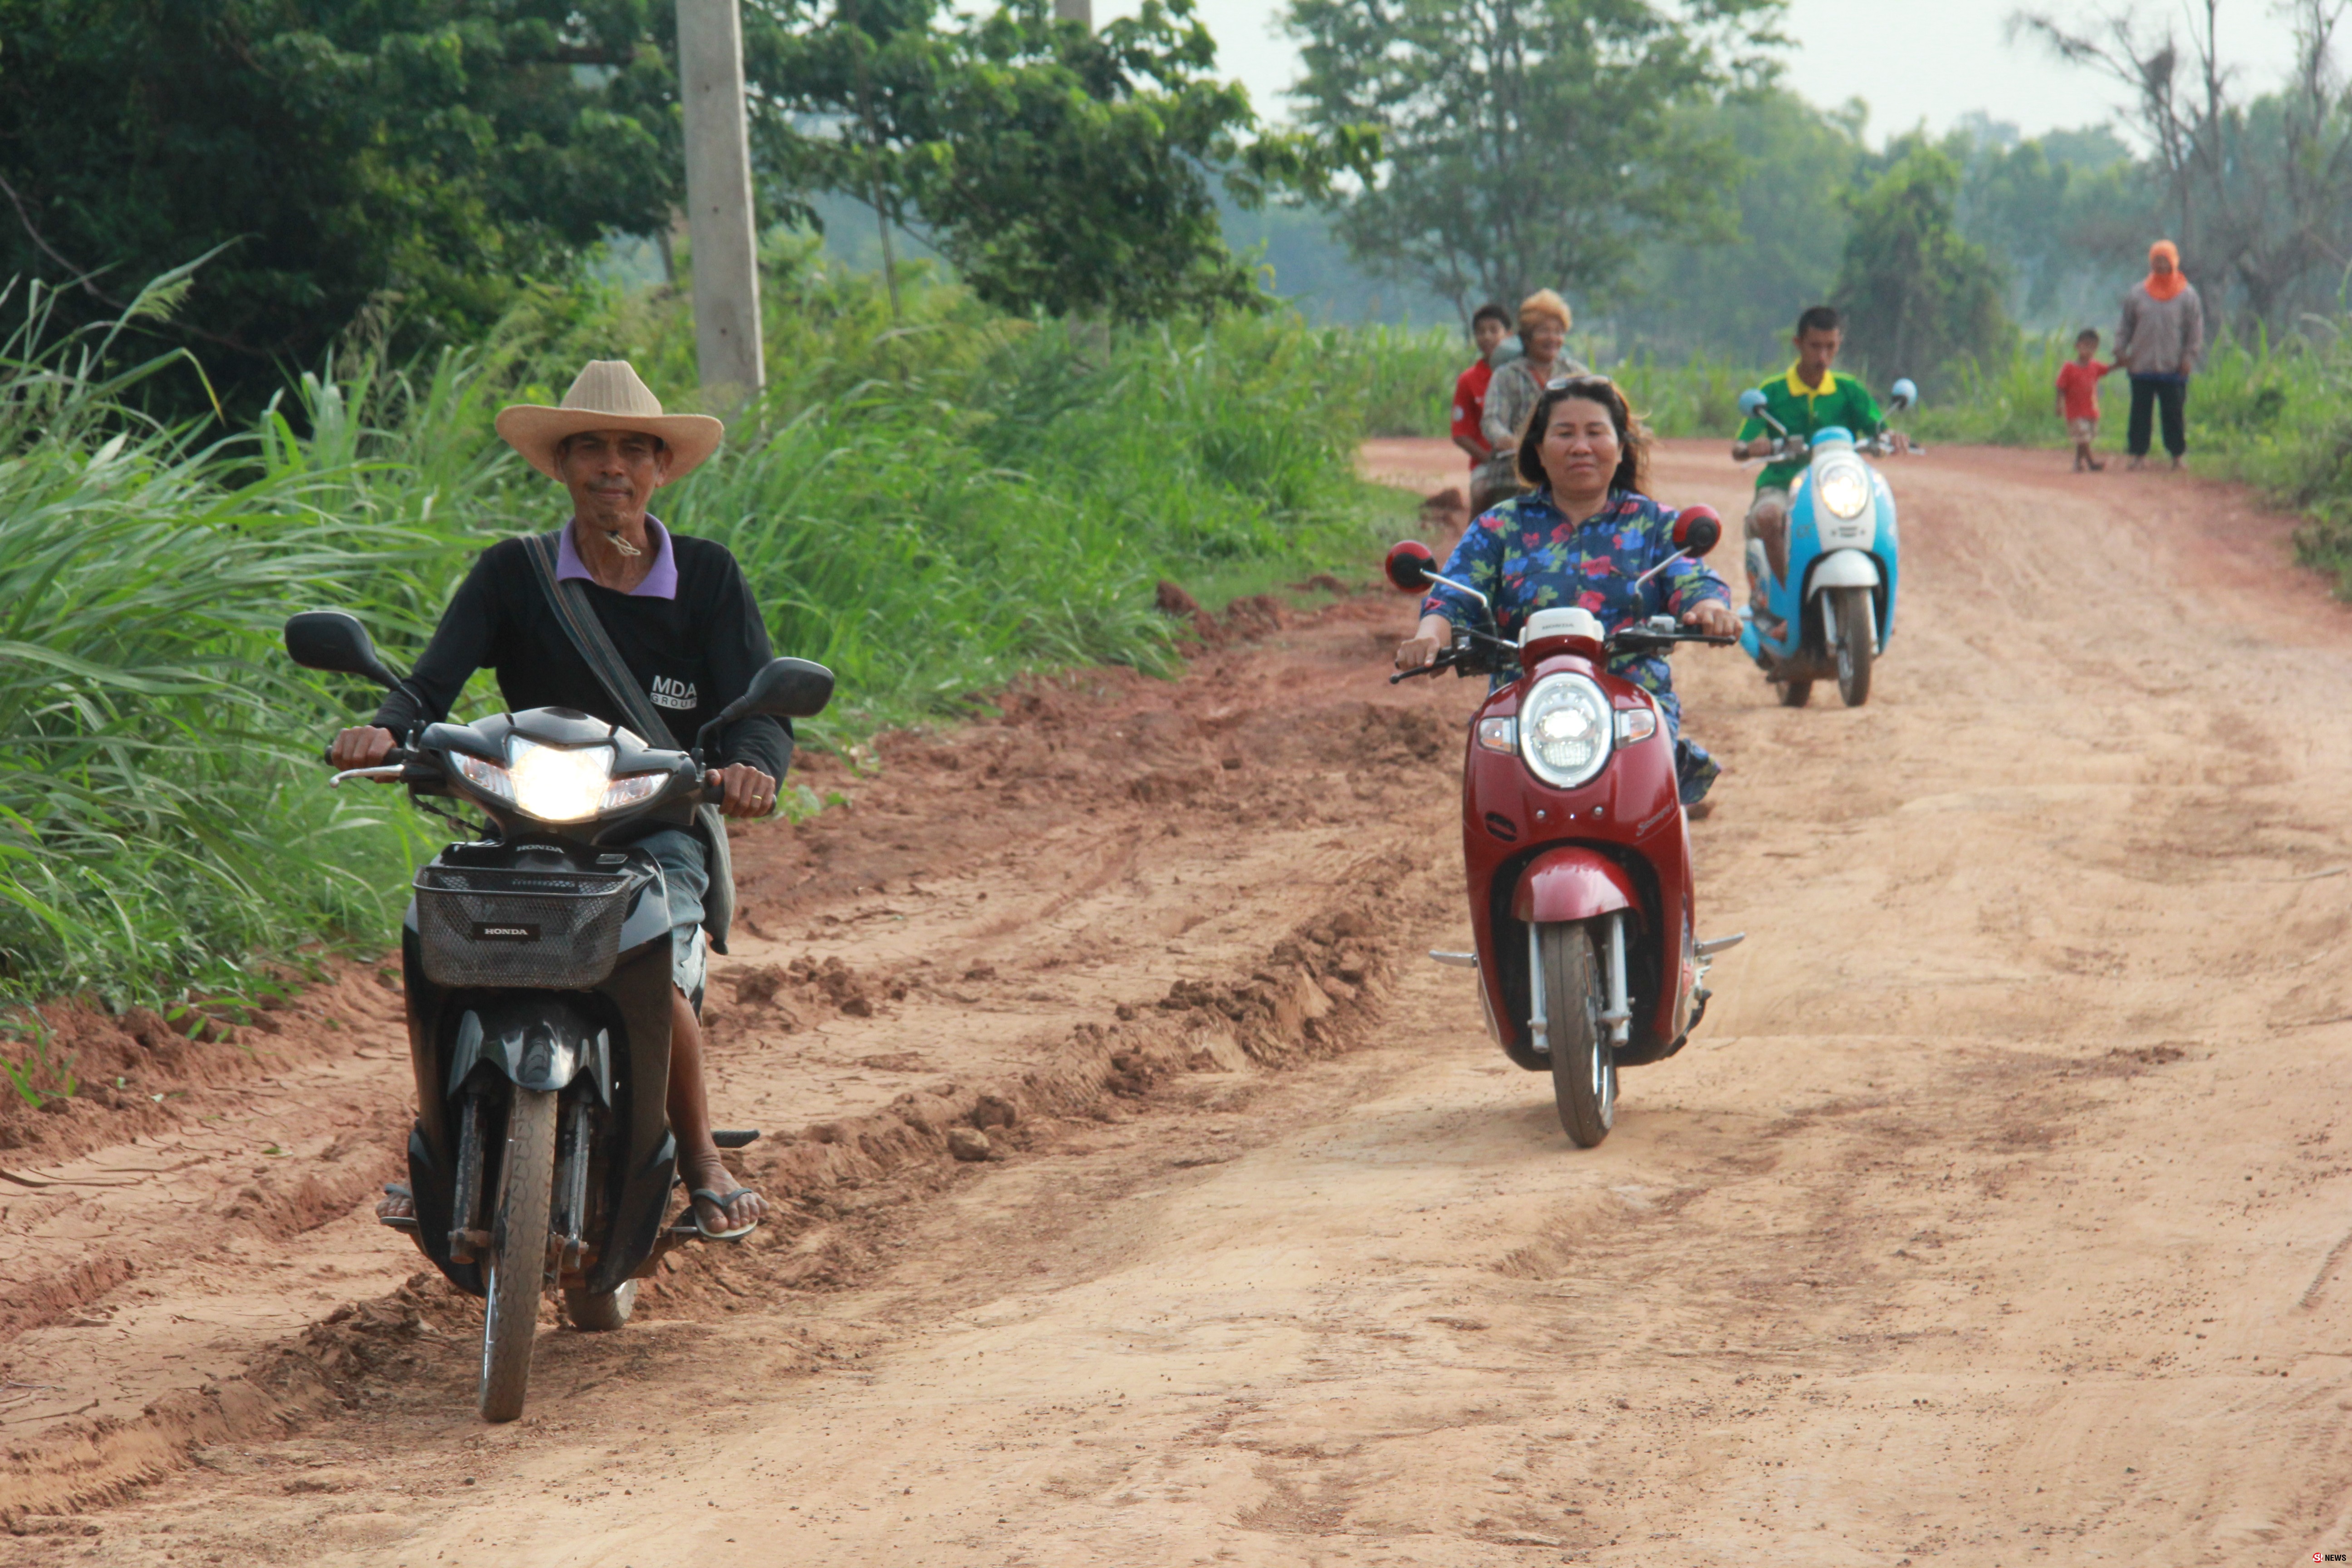 ชาวบ้าน 6 หมู่บ้าน ร้องถนนยาว 8 กิโลสัญจรลำบาก หลายจุดกลายเป็นโคลน เด็กเสี่ยงอันตราย 